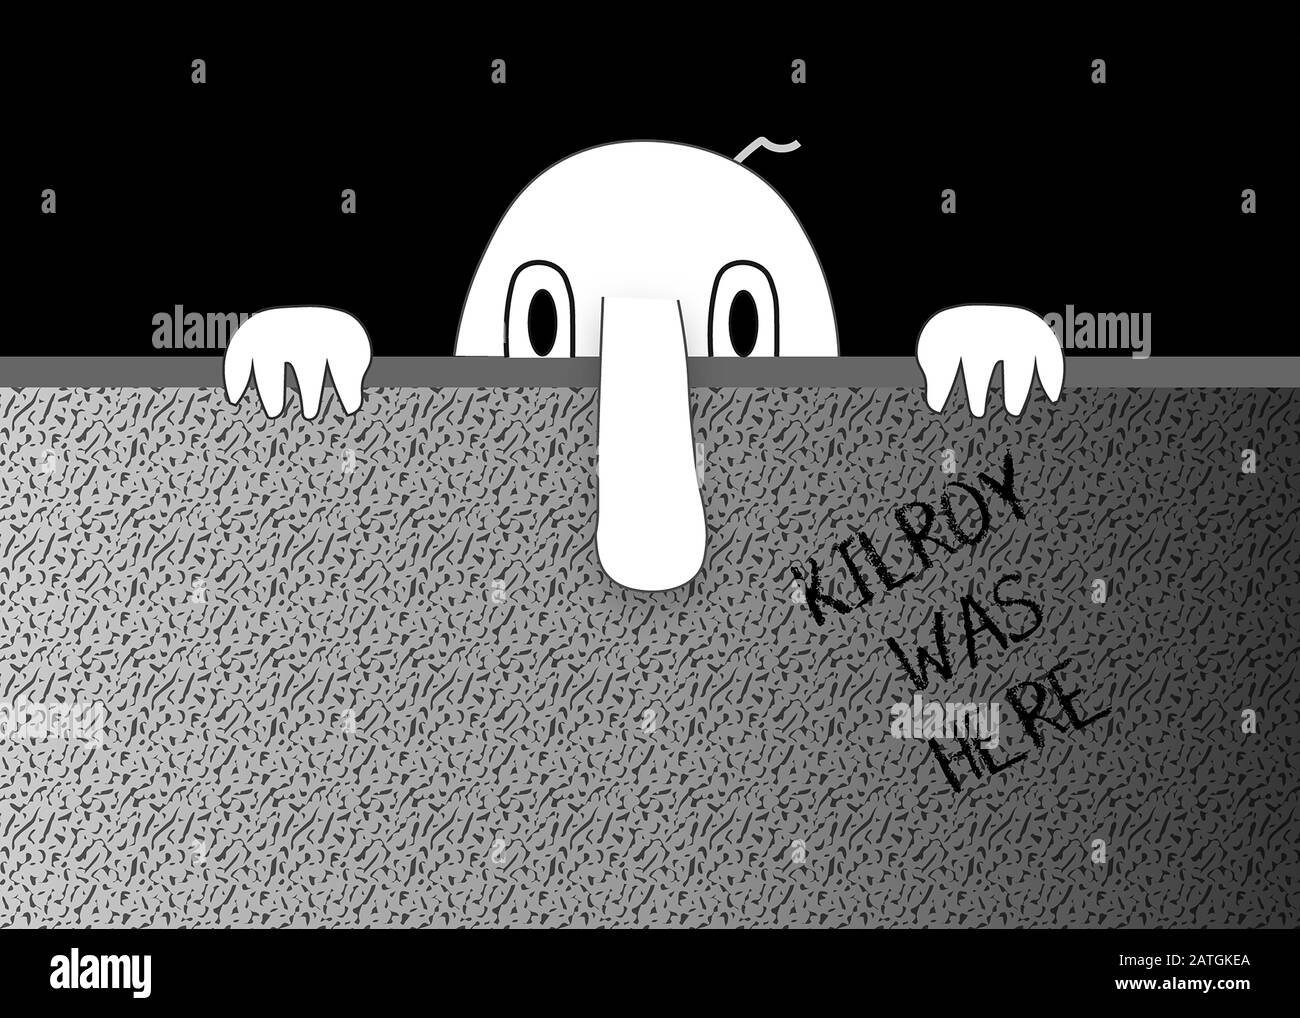 Personaggio Kilroy che sbirciava dietro il muro. Illustrazione grafica Foto Stock